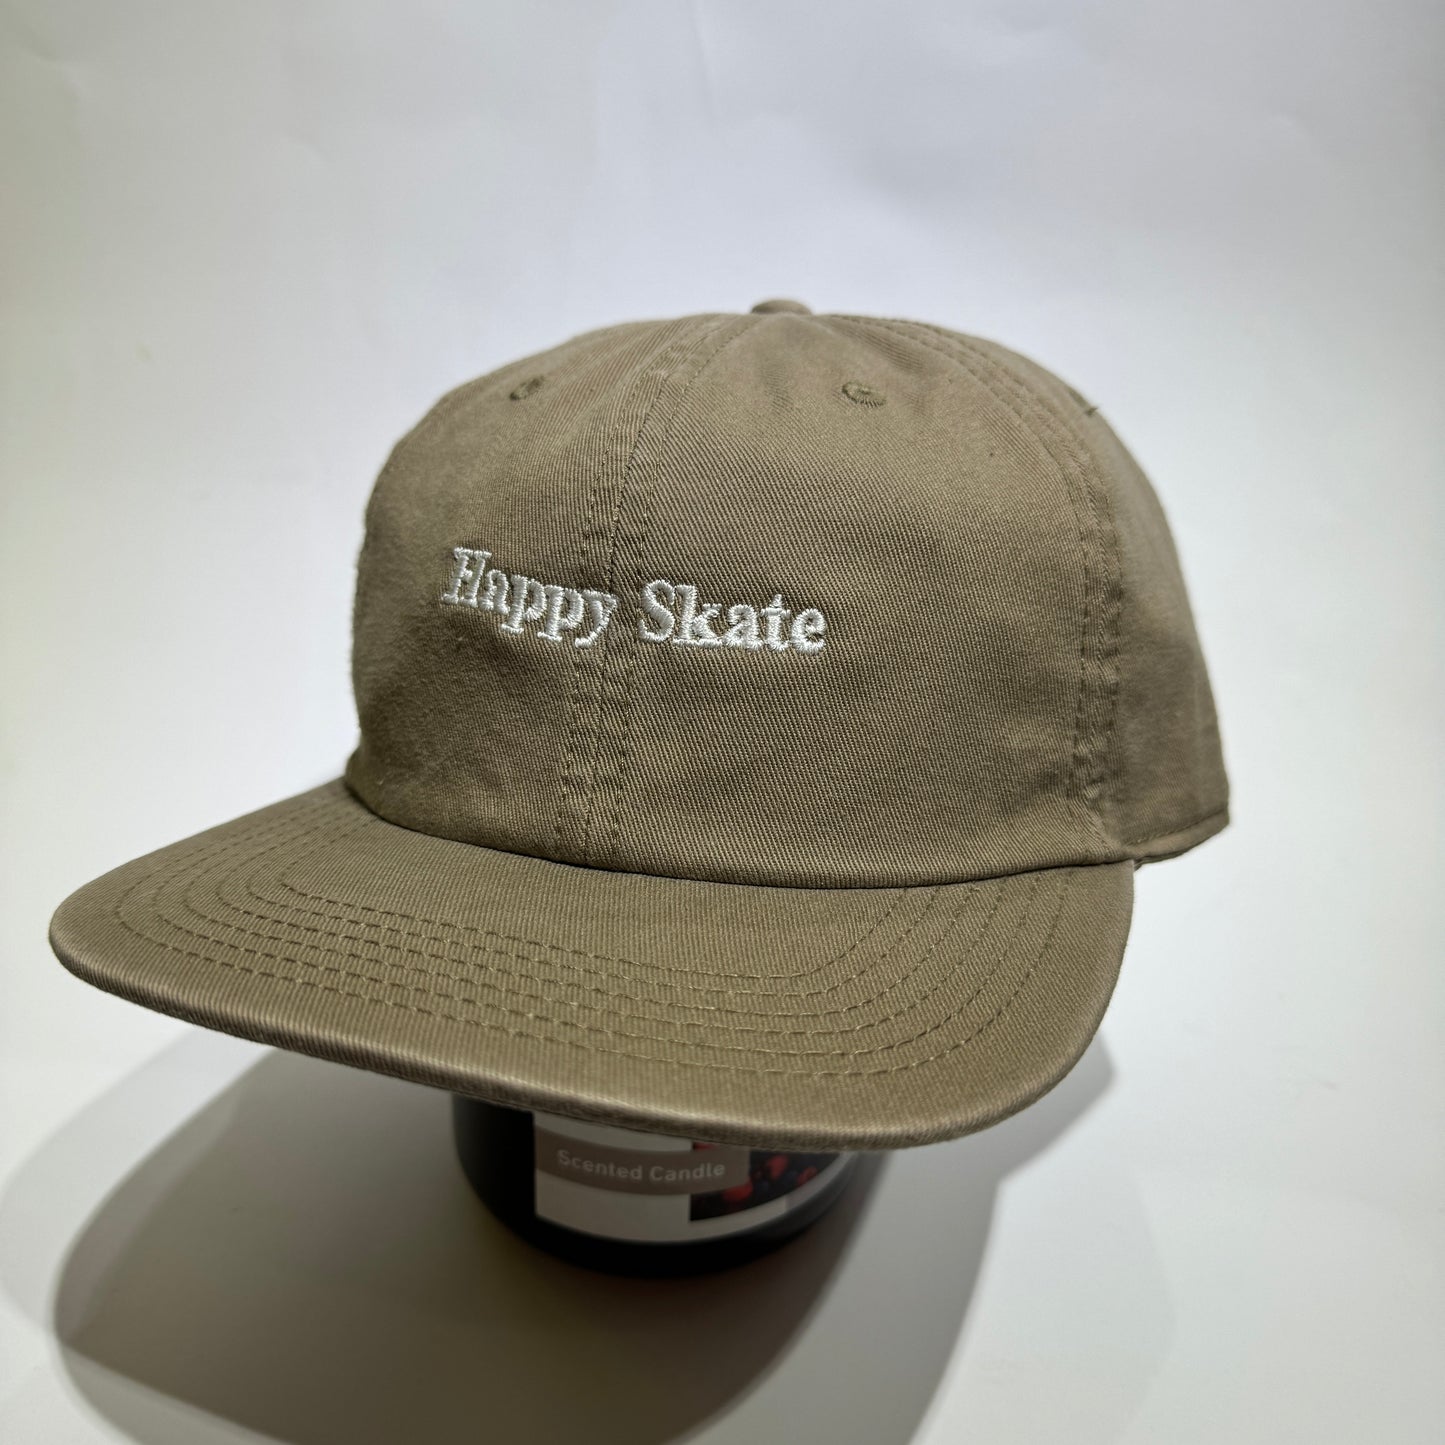 Happy Skate Dad Cap - light brown